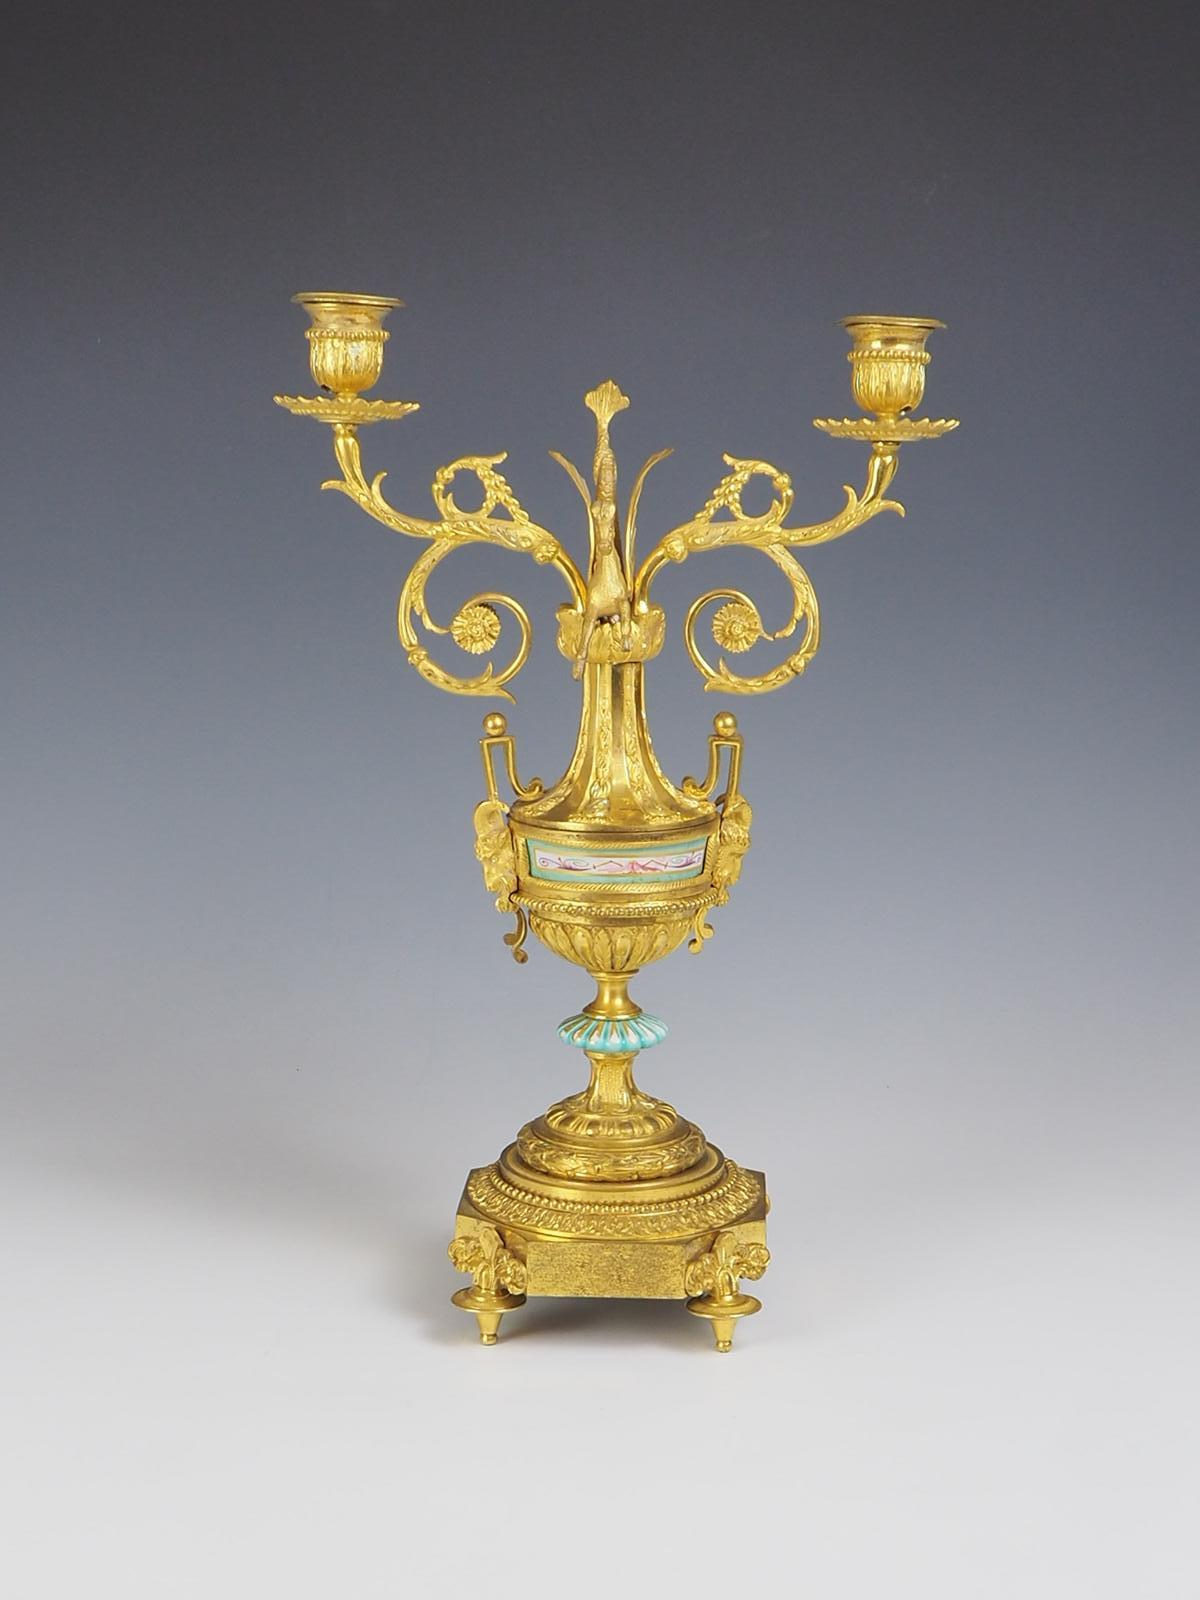 Der antike Ormolu-Kronleuchter aus vergoldeter Bronze ist ein wahrhaft exquisites Stück, das Eleganz und Raffinesse ausstrahlt.

Das mit viel Liebe zum Detail gefertigte Möbelstück weist an seinen vier erhöhten Füßen aufwändige Pferde- und